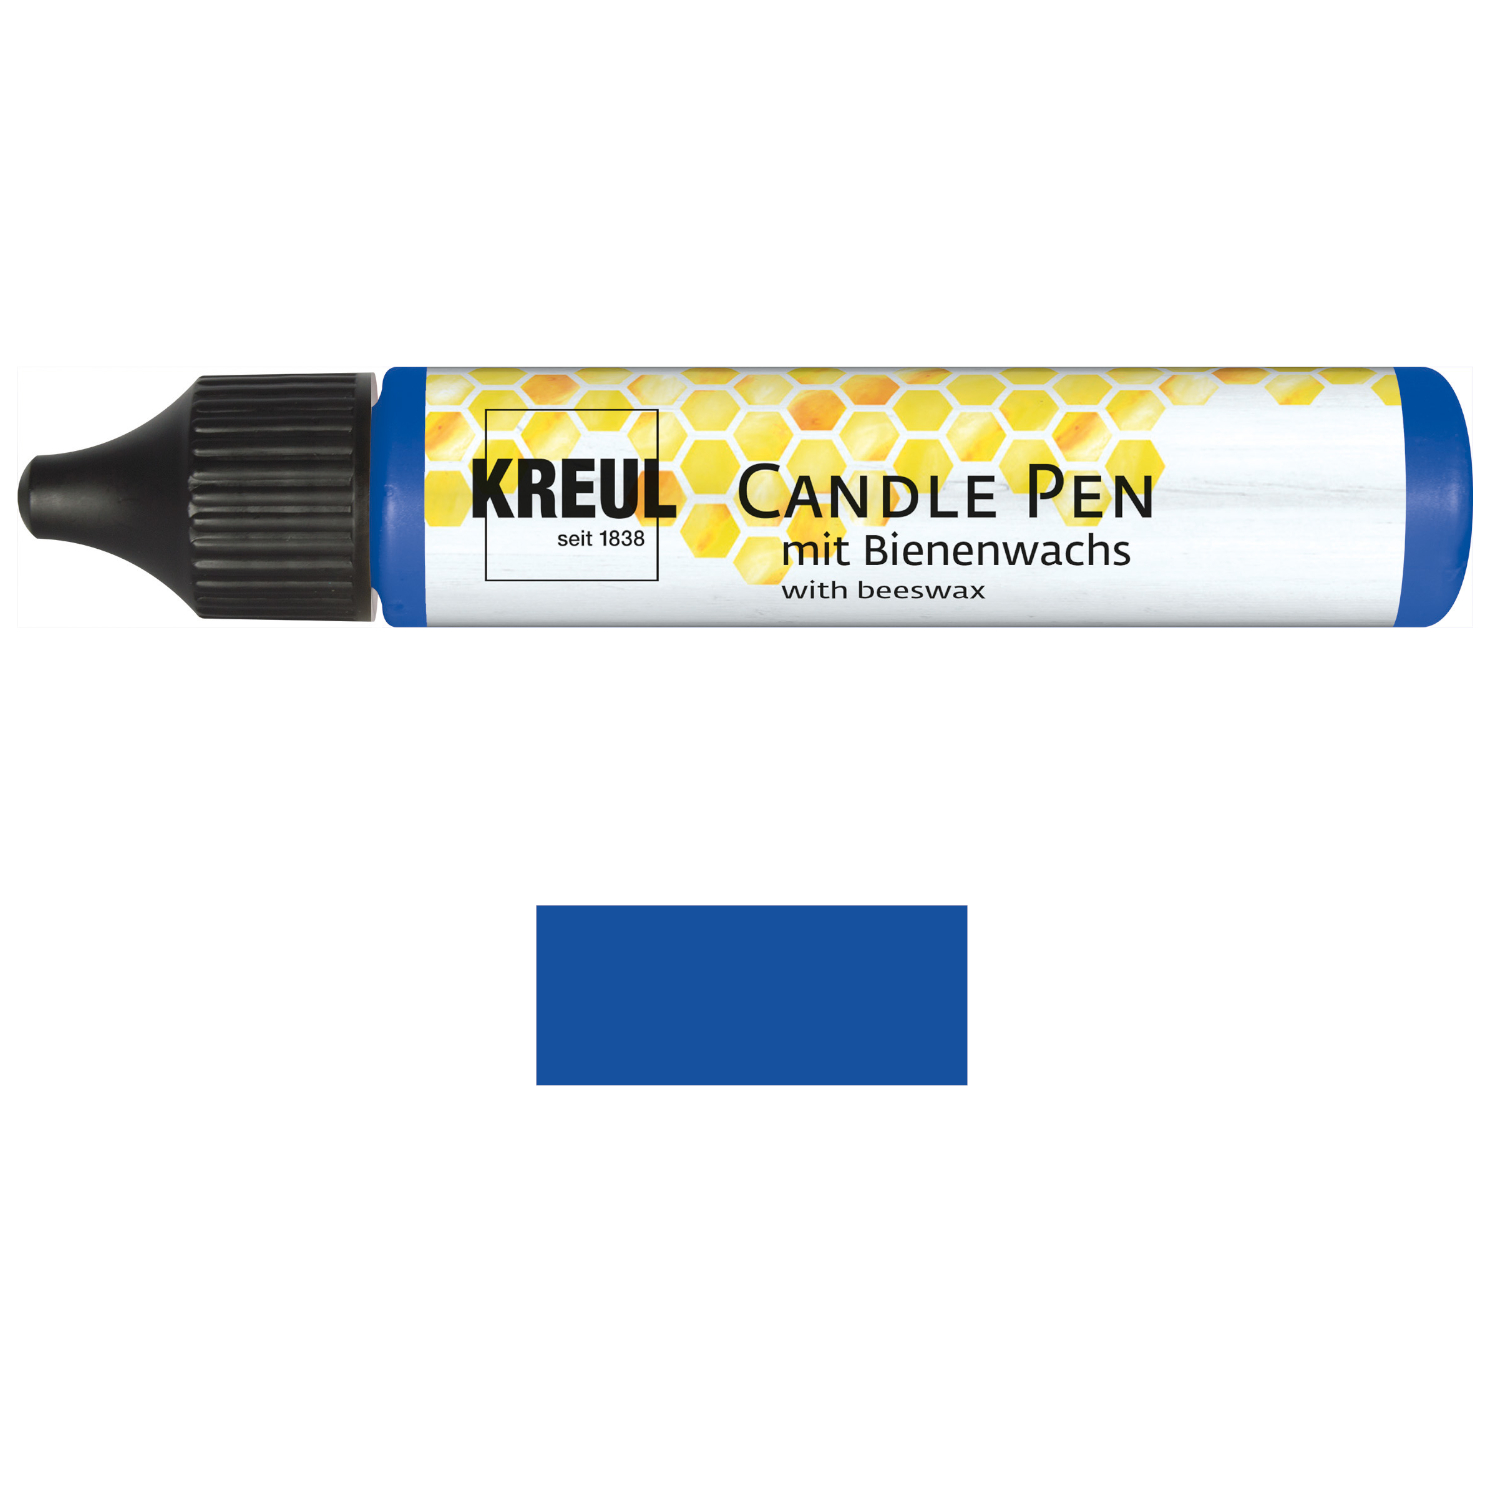 NEU KREUL Candle Pen / Kerzen-Stift, 29ml, Blau